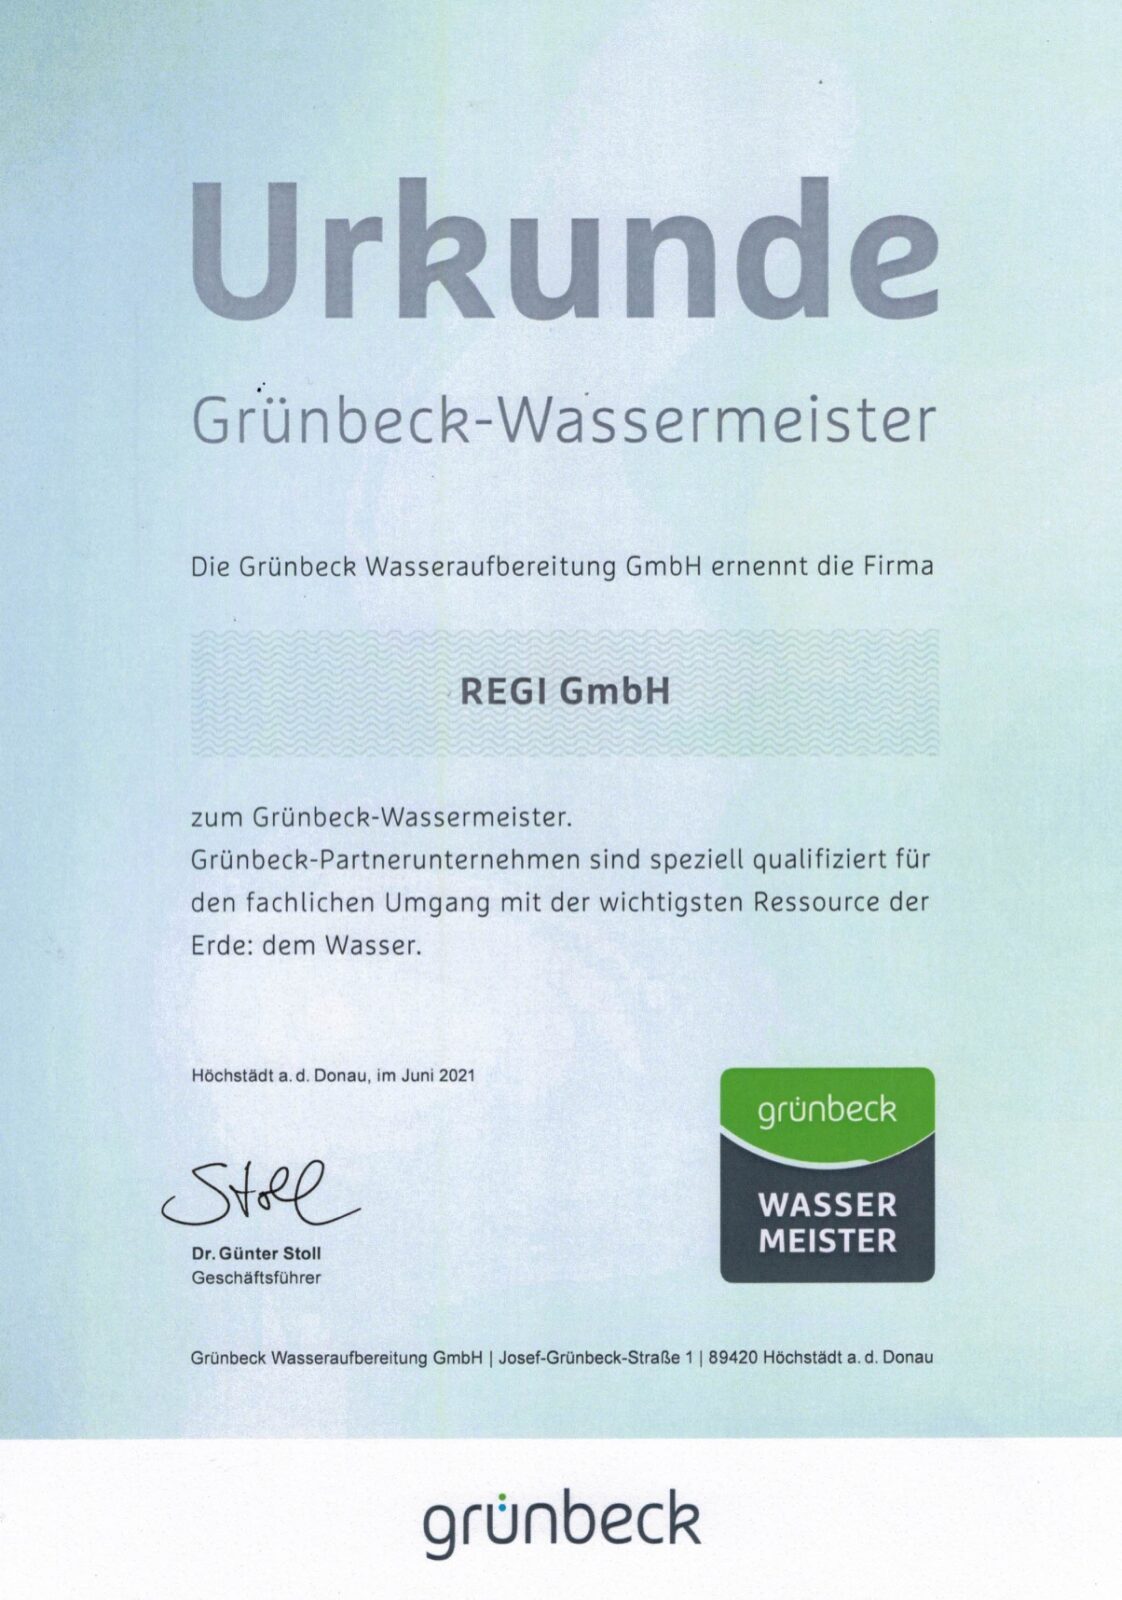 gruenbeck-wassermeister_2021